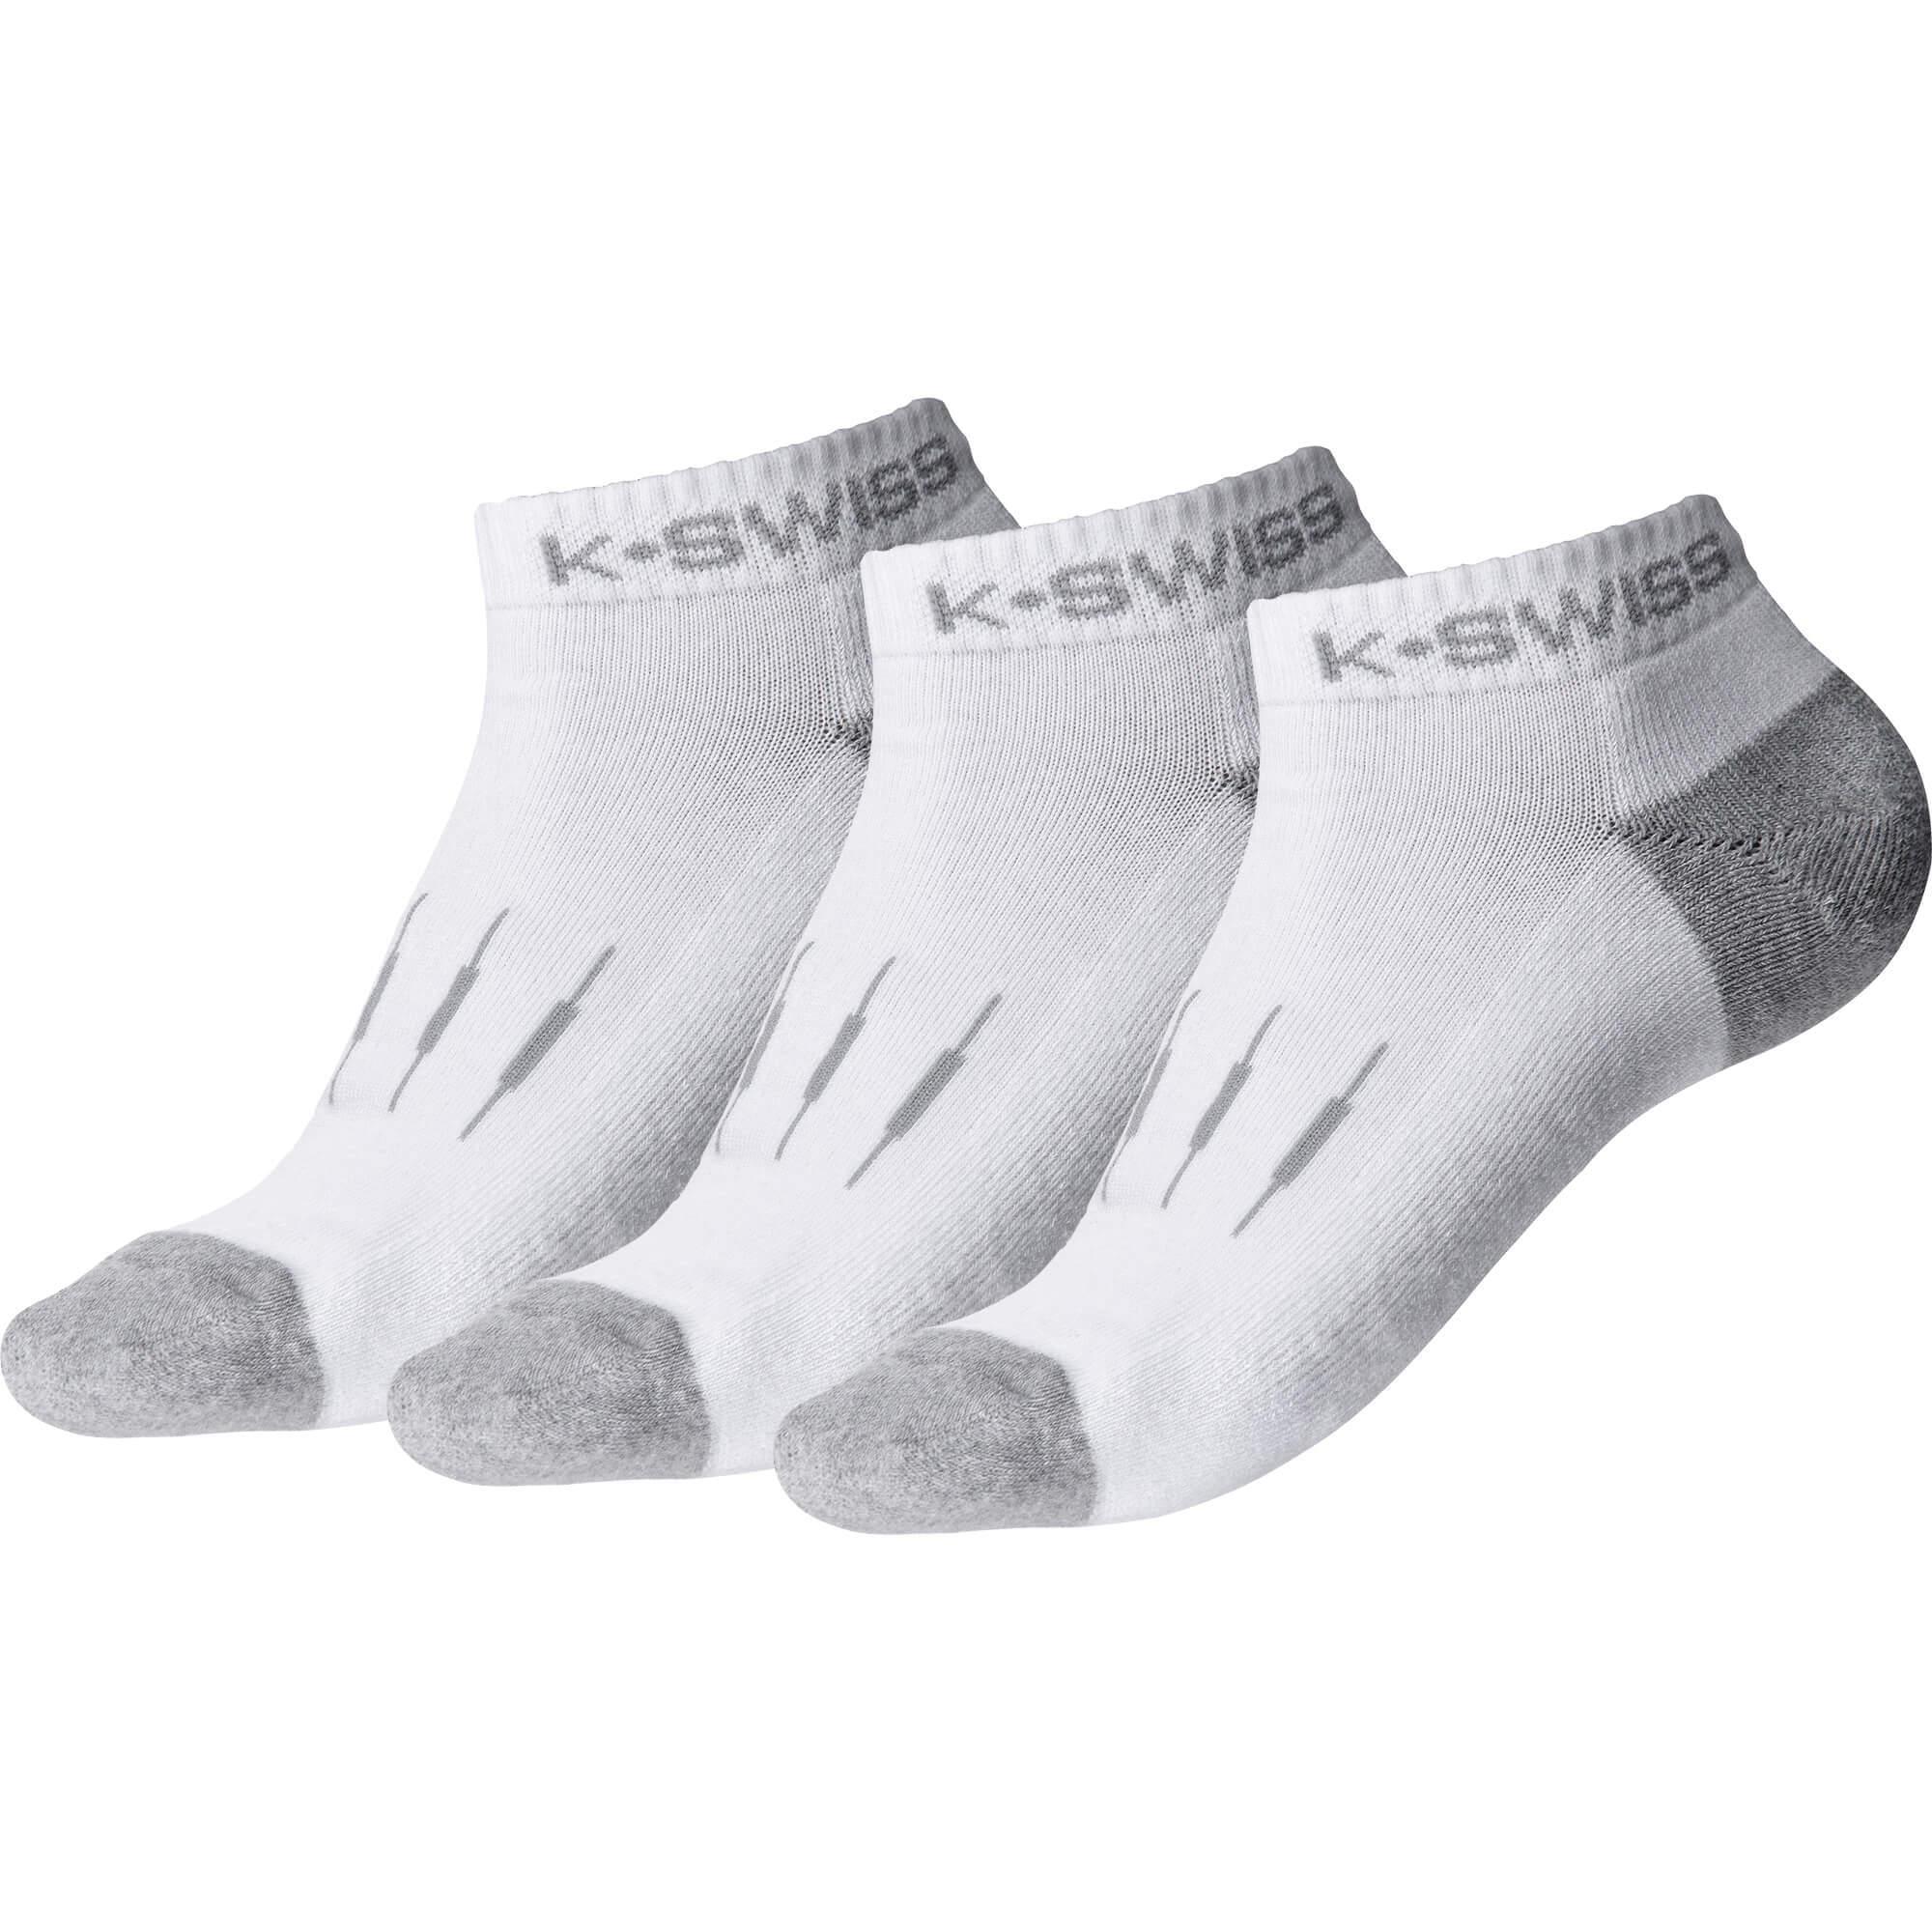 K-Swiss Women's Low Cut Sports Socks - 3 Pack - Bassline Retail